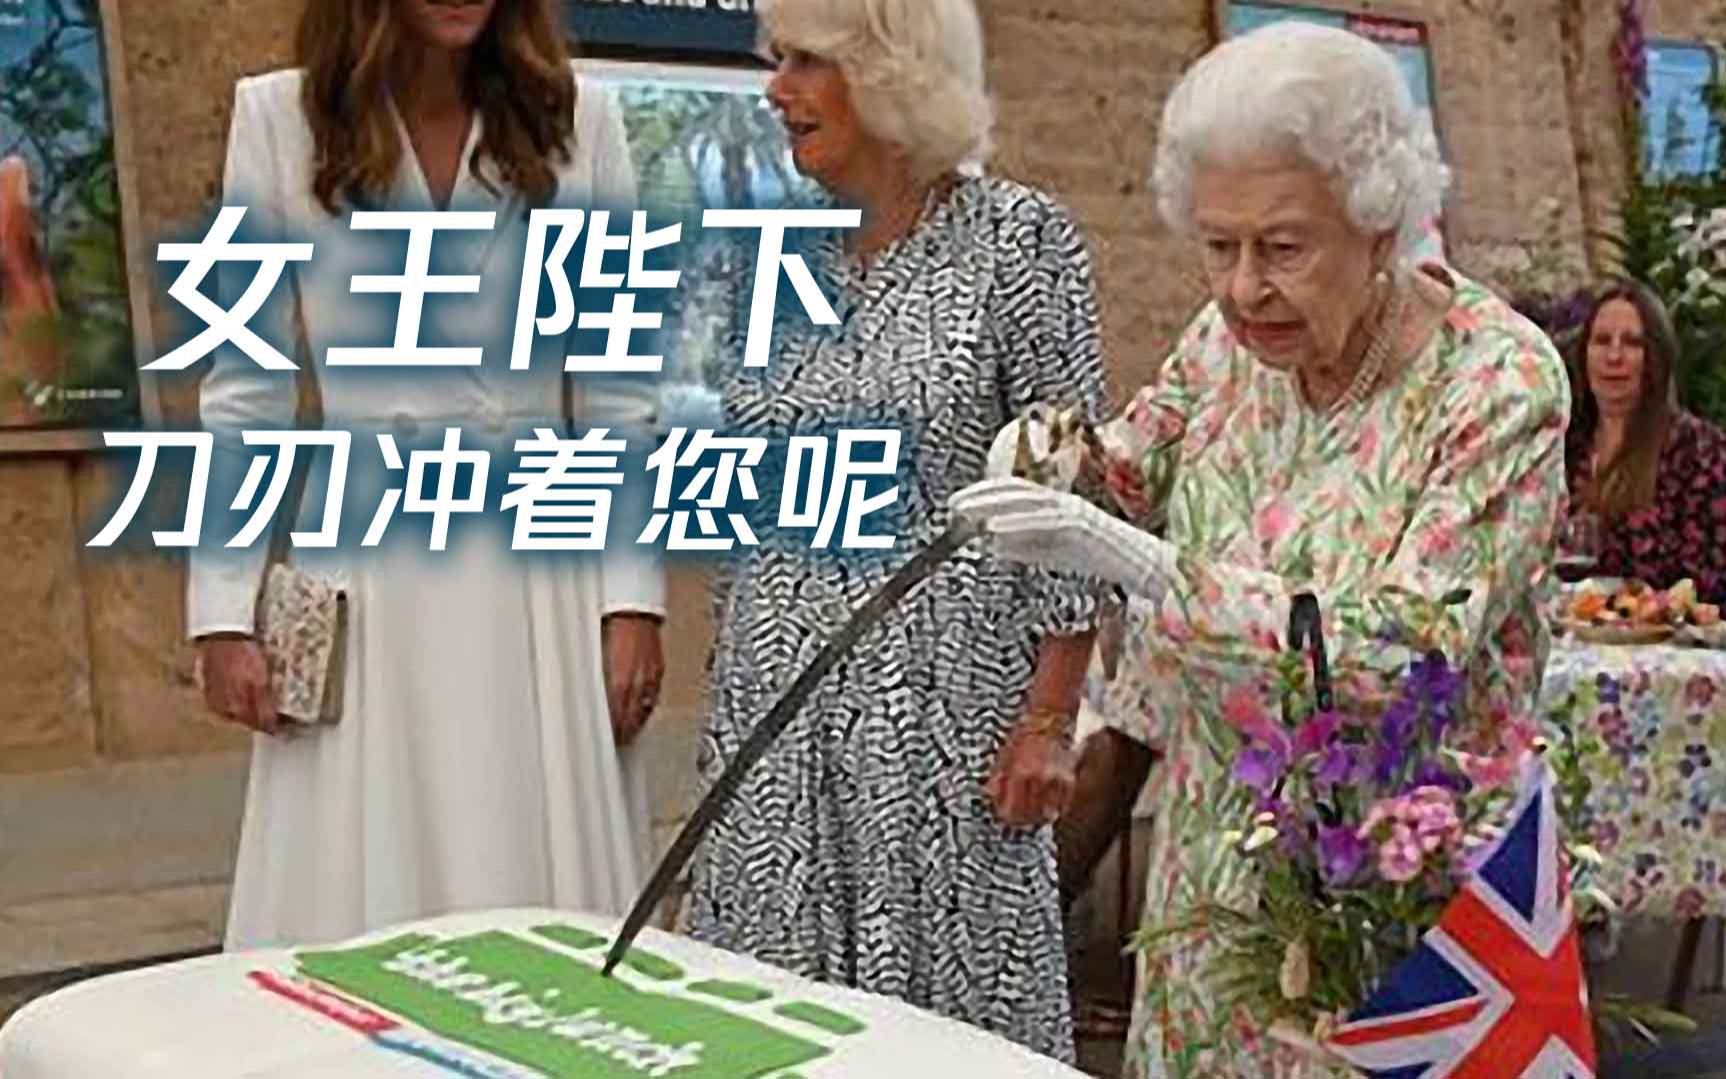 95岁英女王坚持用宝刀瓜分蛋糕 可惜刀拿反了 刃冲着自己切不动